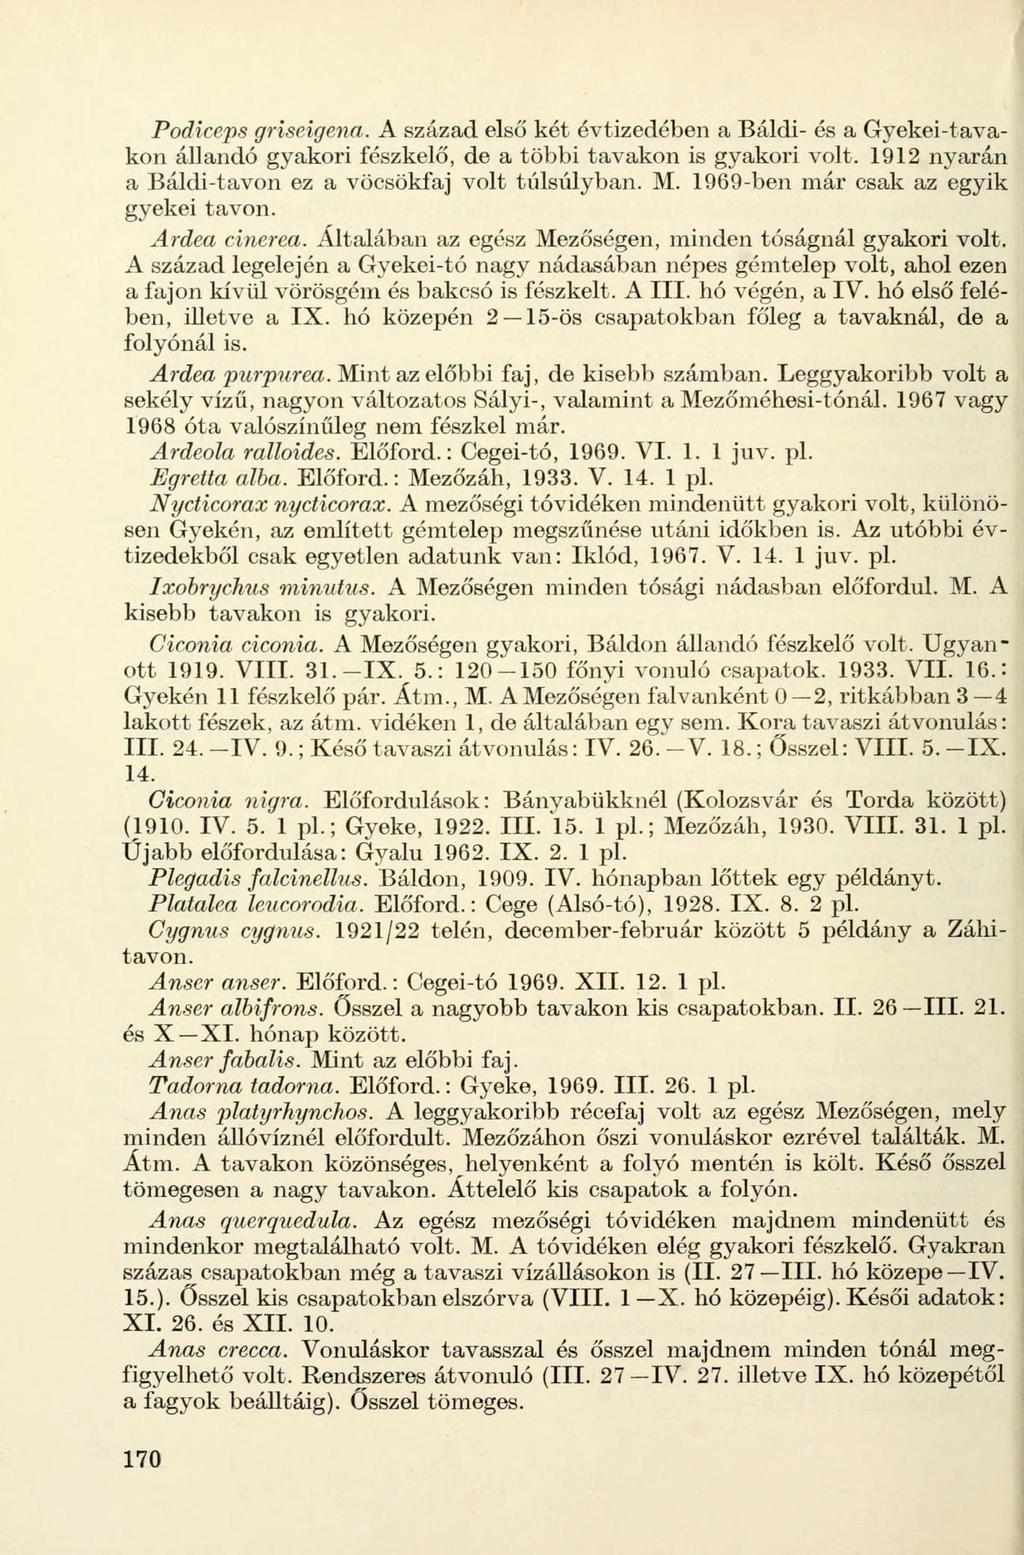 Podiceps griseigena. A század első két évtizedében a Báldi- és a Gyekei-tavakon állandó gyakori fészkelő, de a többi tavakon is gyakori volt. 1912 nyarán a Báldi-tavon ez a vöcsökfaj volt túlsúlyban.